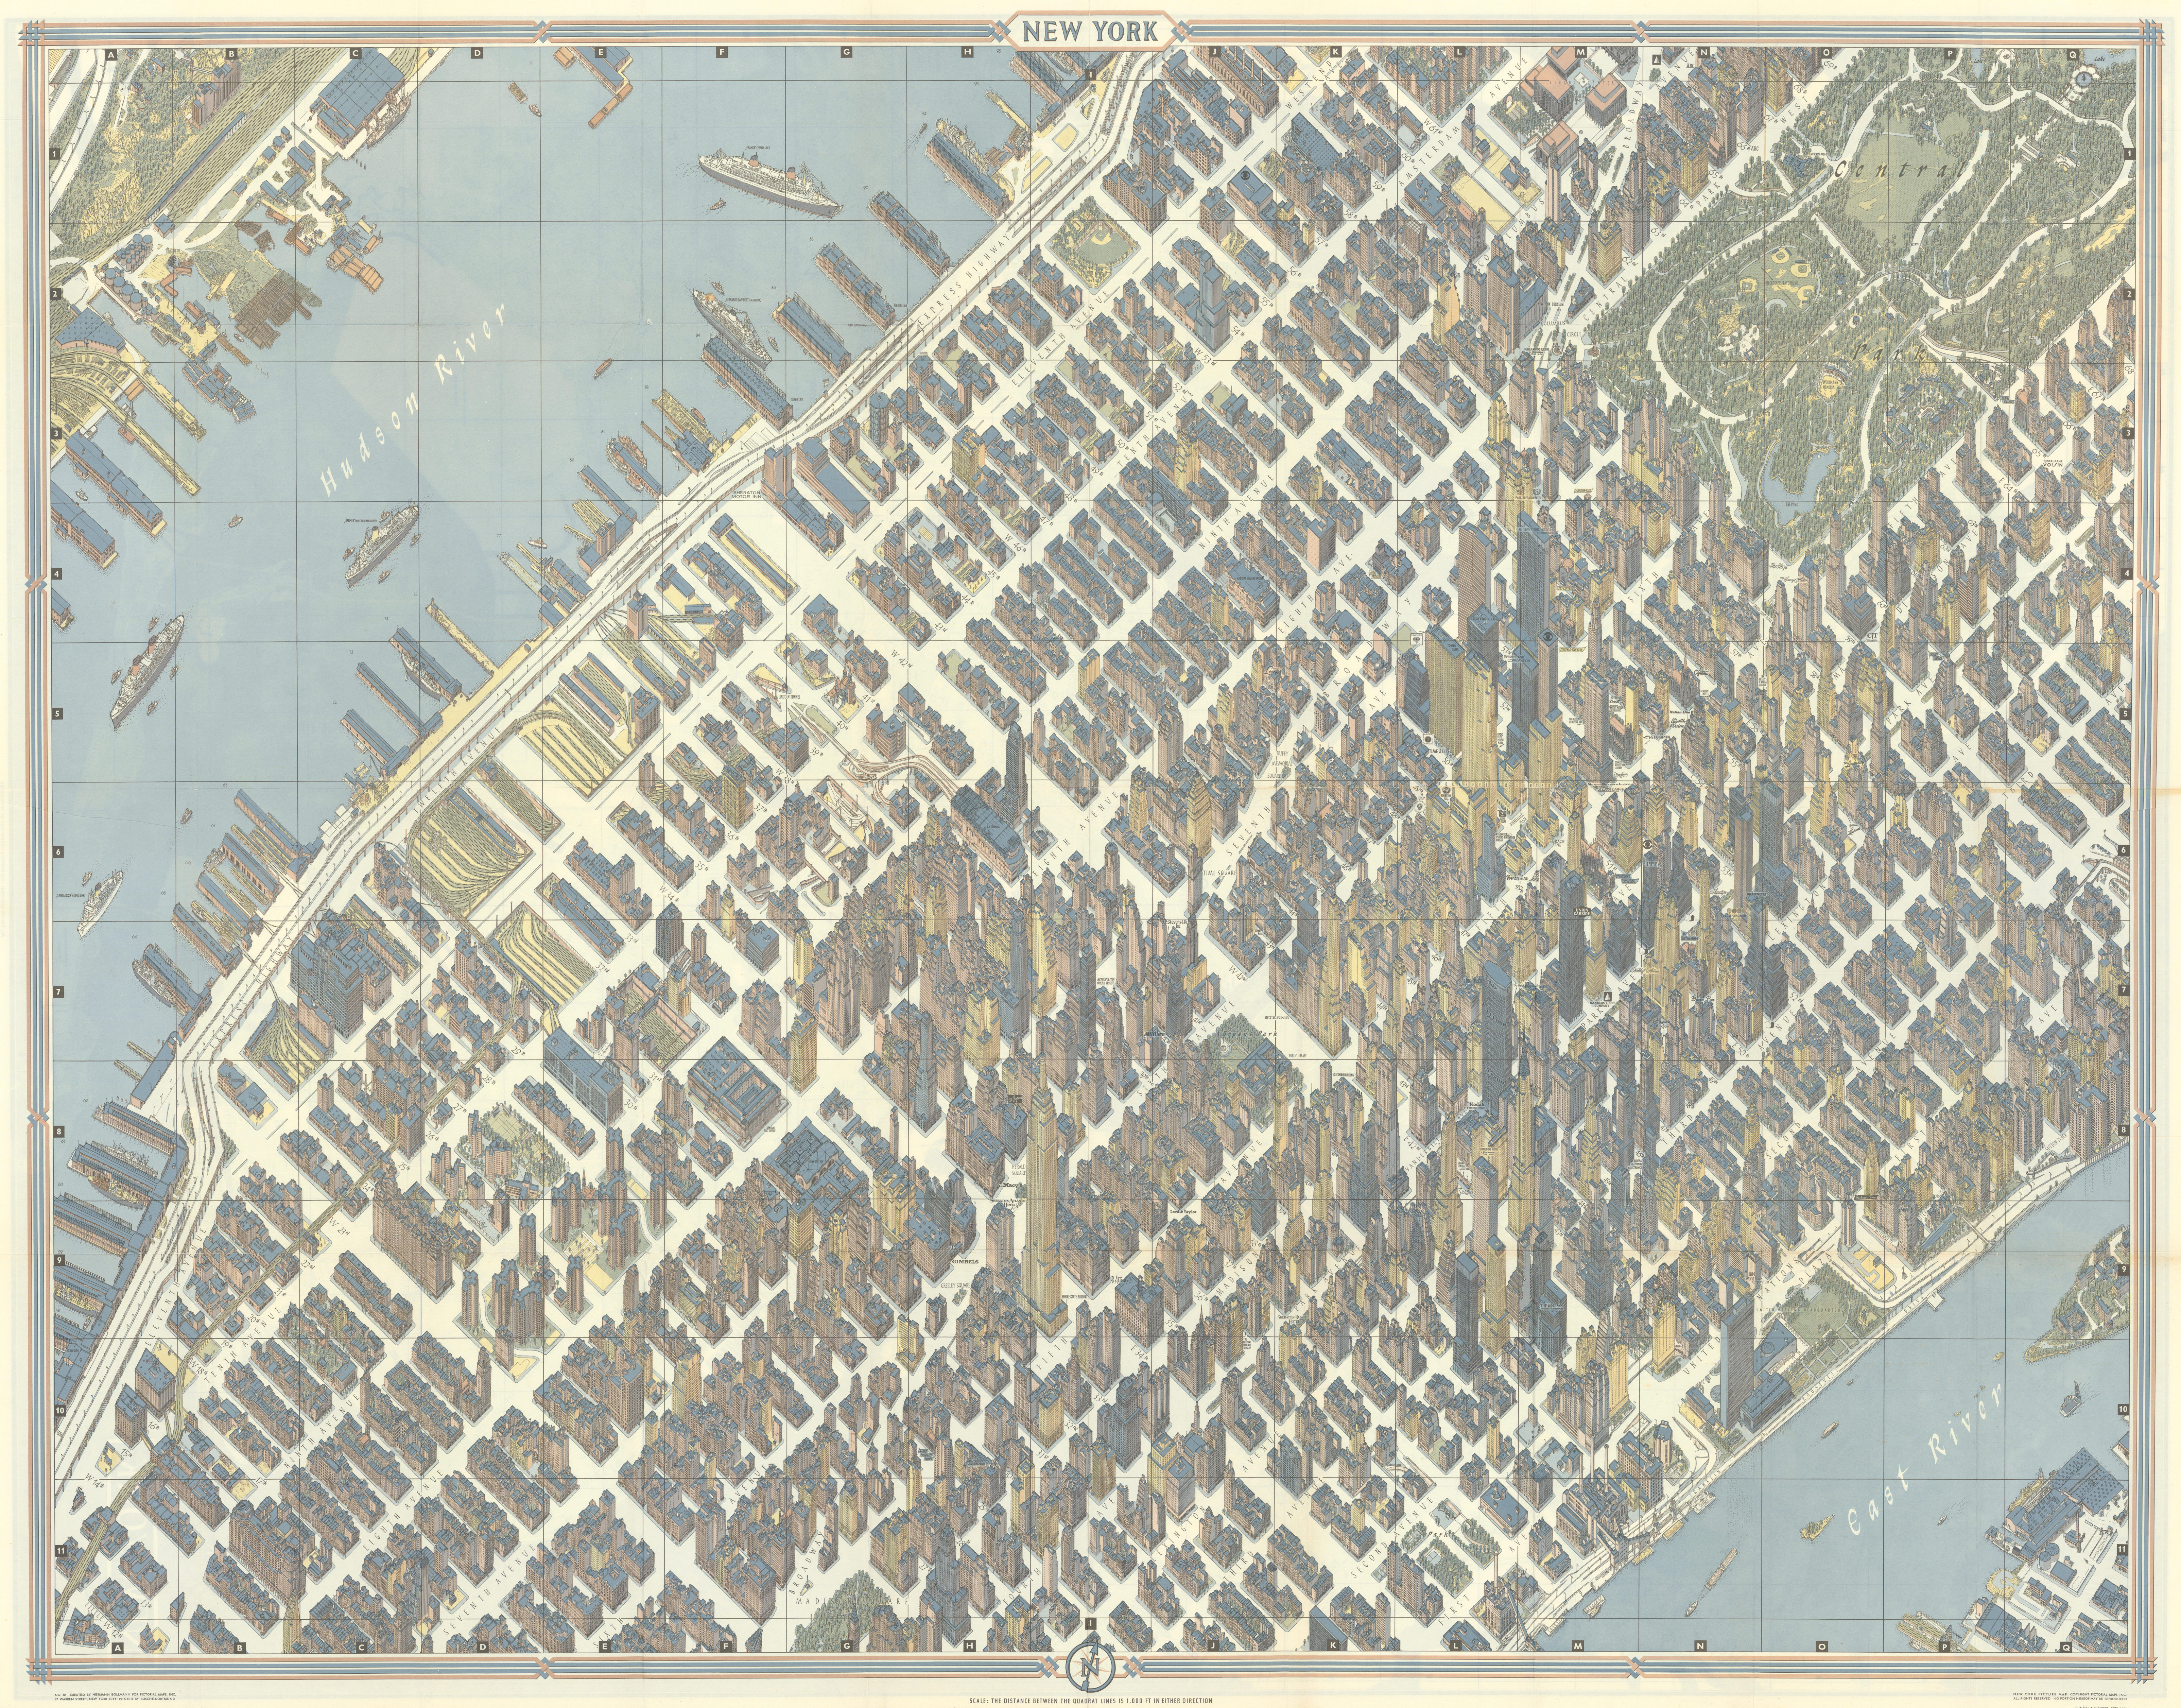 Associate Product New York pictorial bird's eye view city plan. Manhattan. BOLLMANN 1962 old map